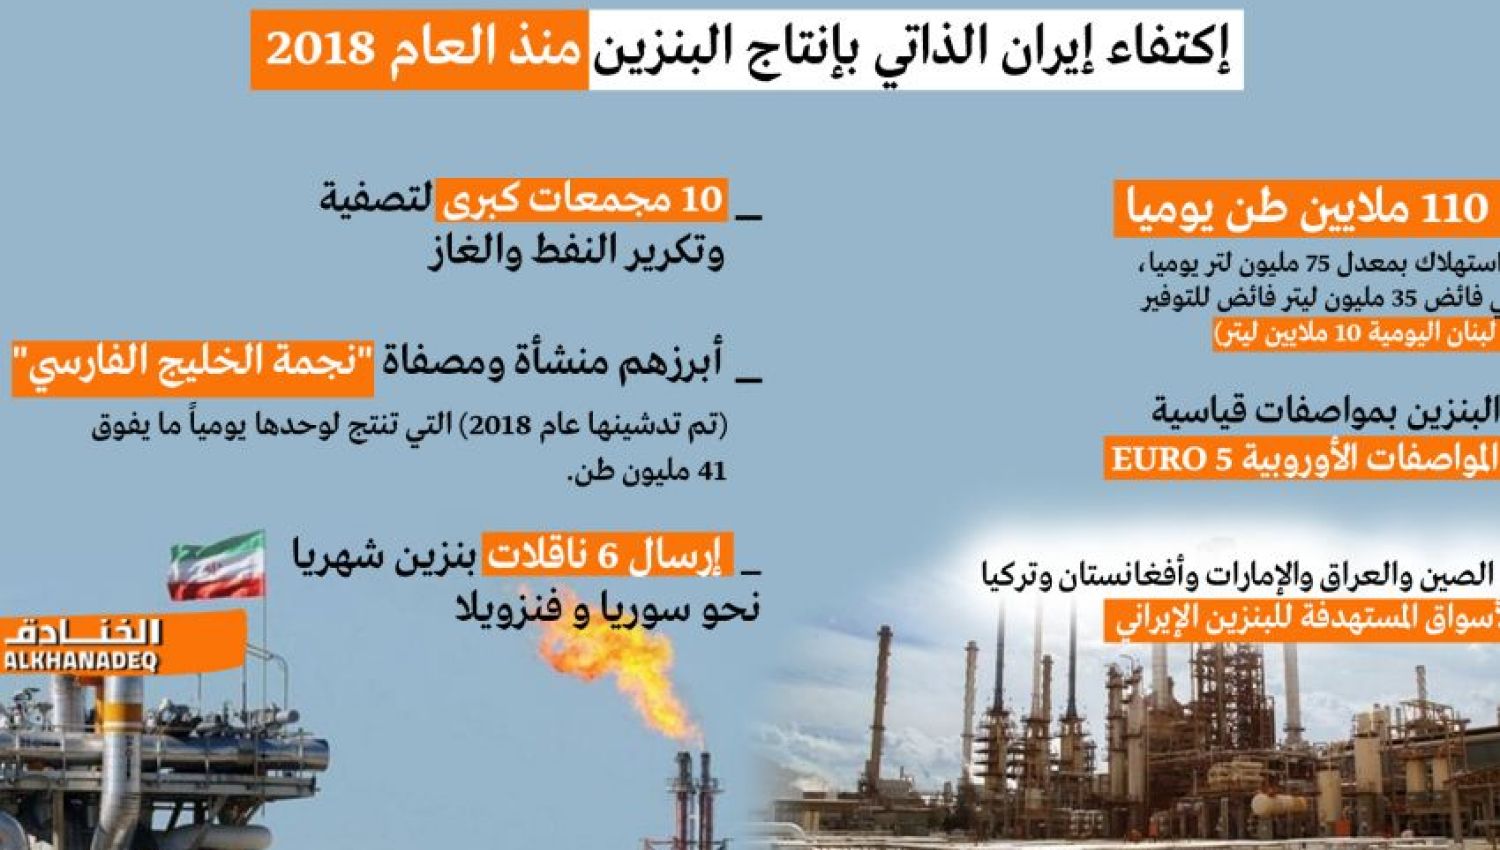 شاهد | إيران تصدر البنزين منذ العام 2018